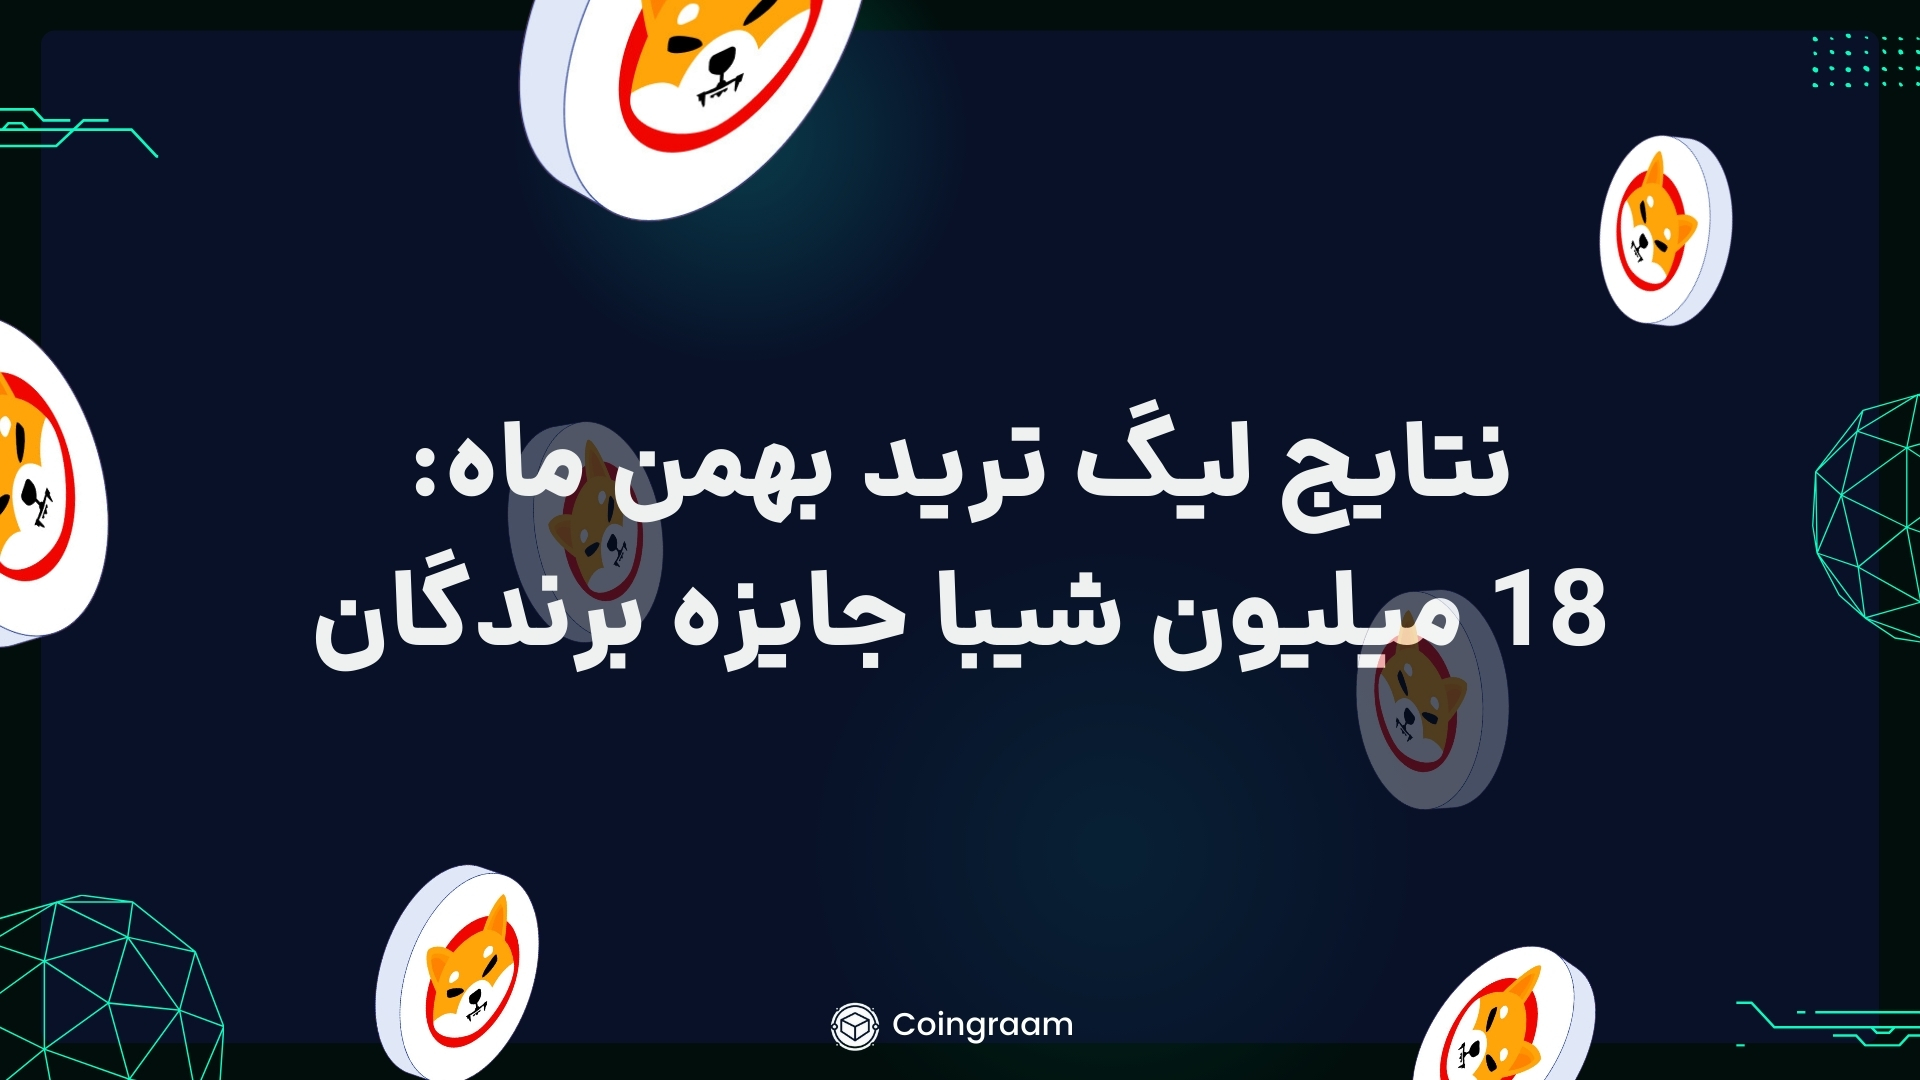 لیگ ترید بهمن ماه کوینگرام به پایان رسید! 18میلیون شیبا جایزه نفرات برتر!